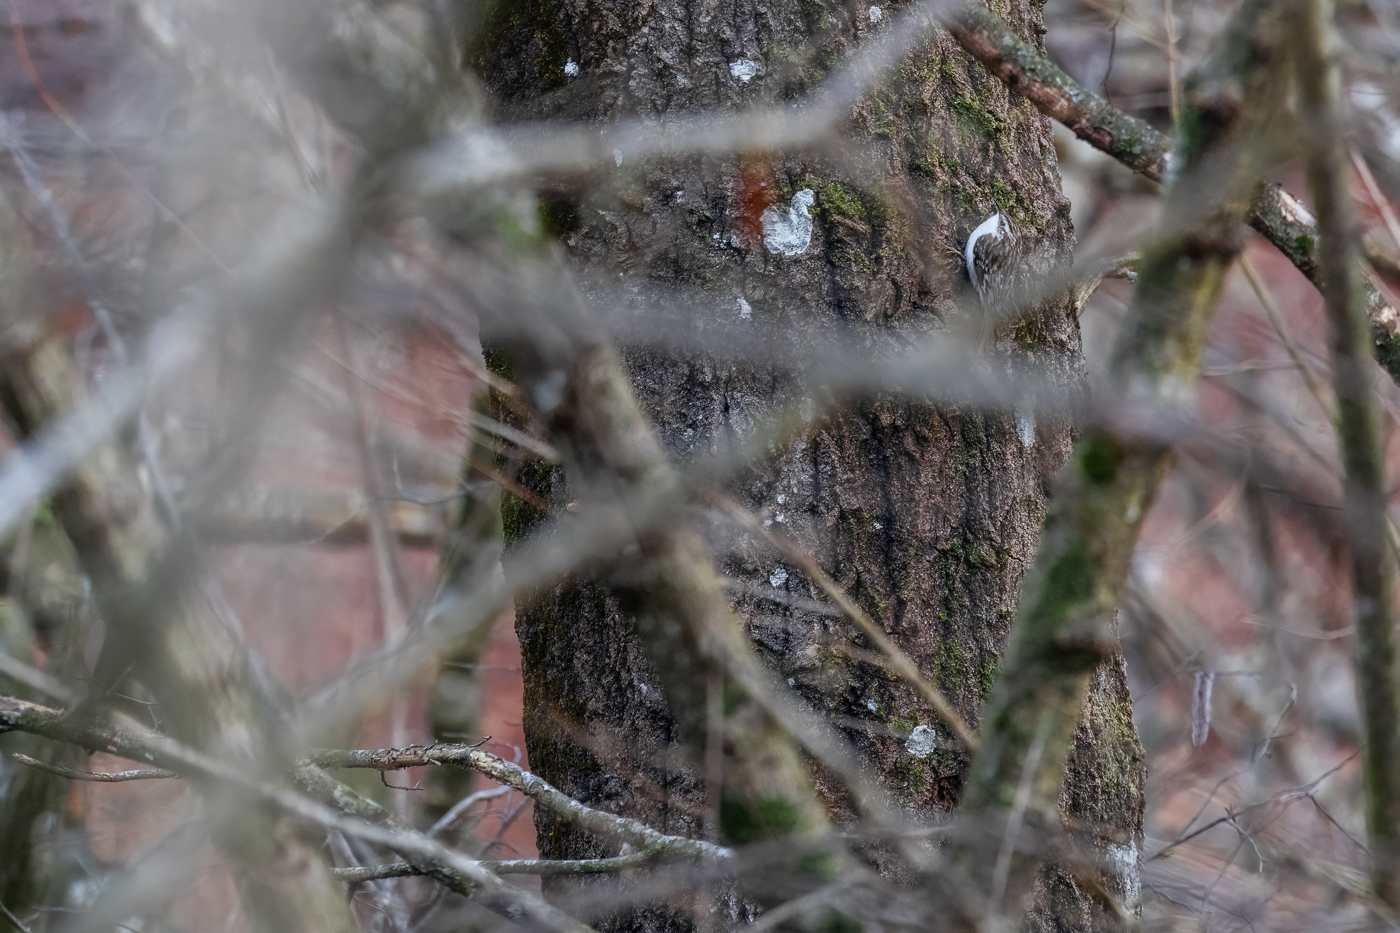 Un rampichino alpestre (Certhia familiaris) in un raro istante di immobilità durante un attento sopralluogo alla ricerca di cibo su un albero. Prealpi Carniche, Italia.